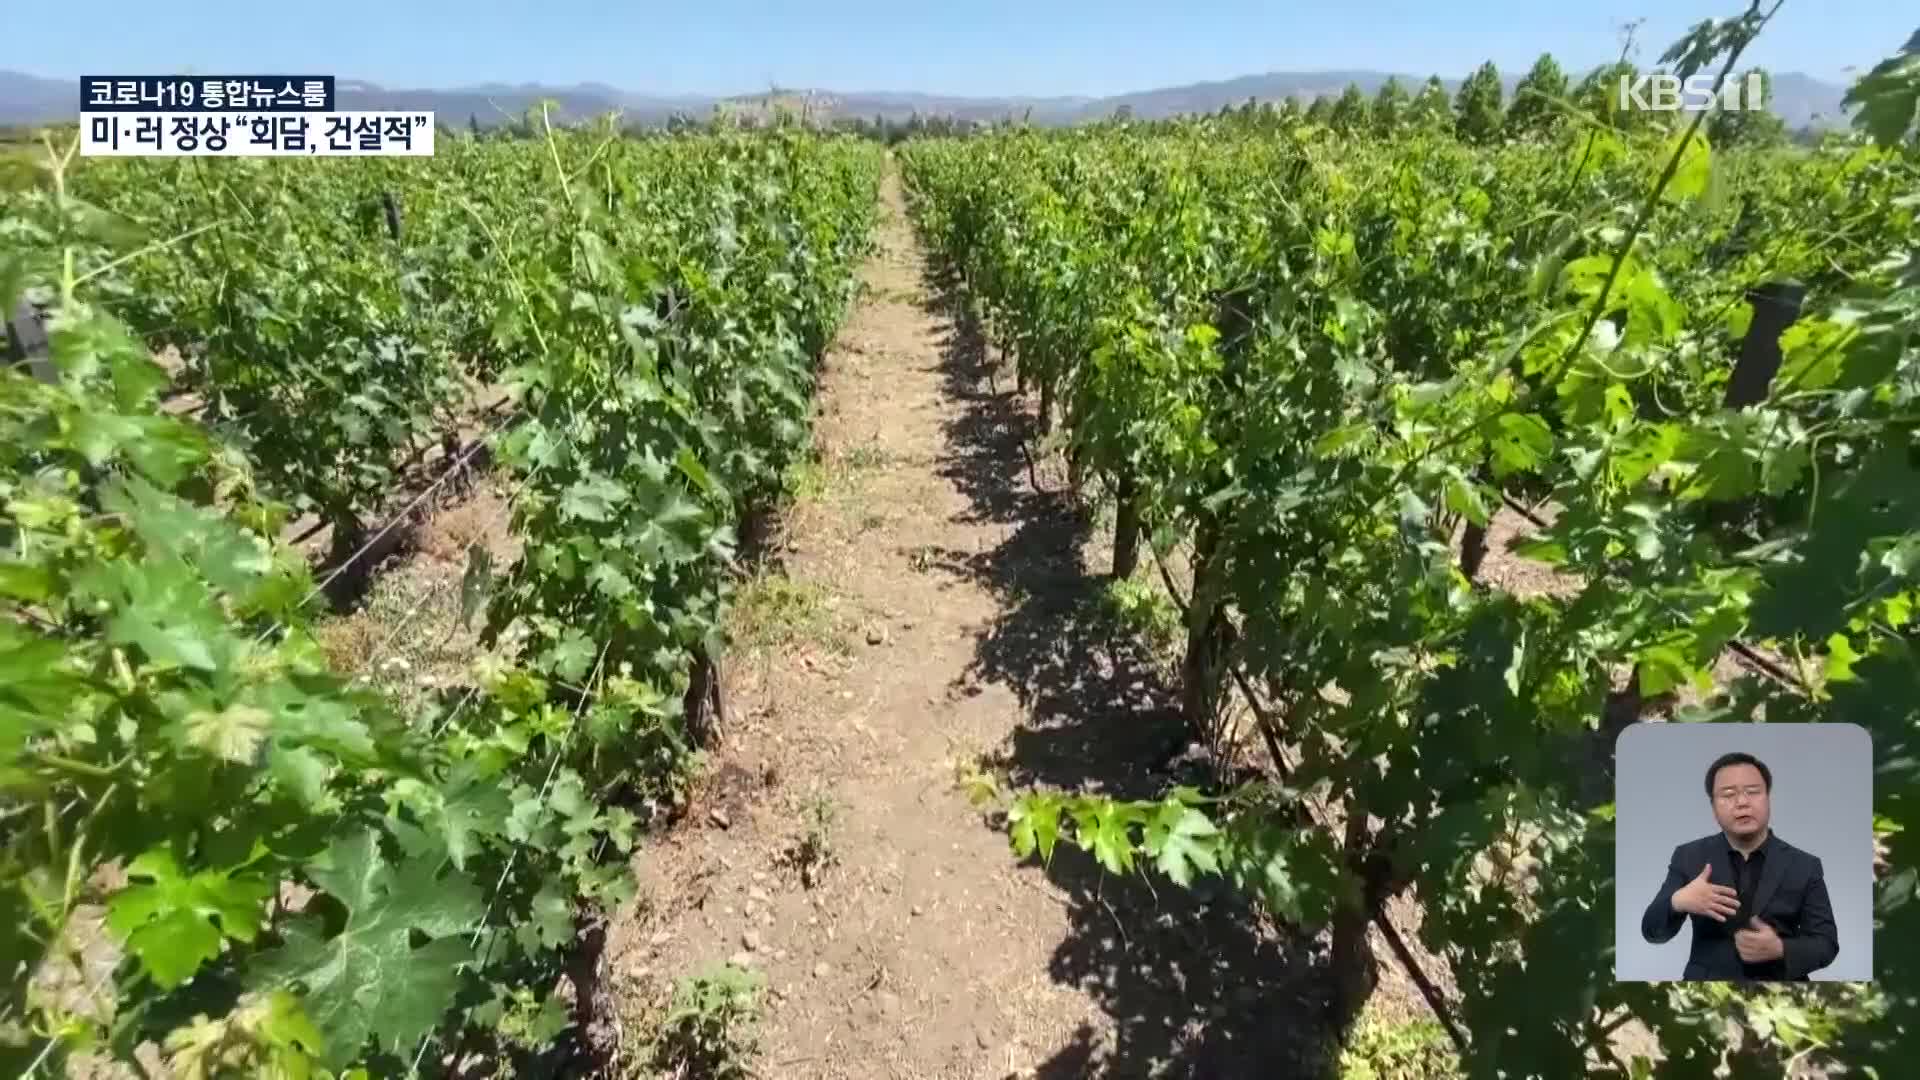 美 캘리포니아 덮친 가뭄, 와인 생산 타격